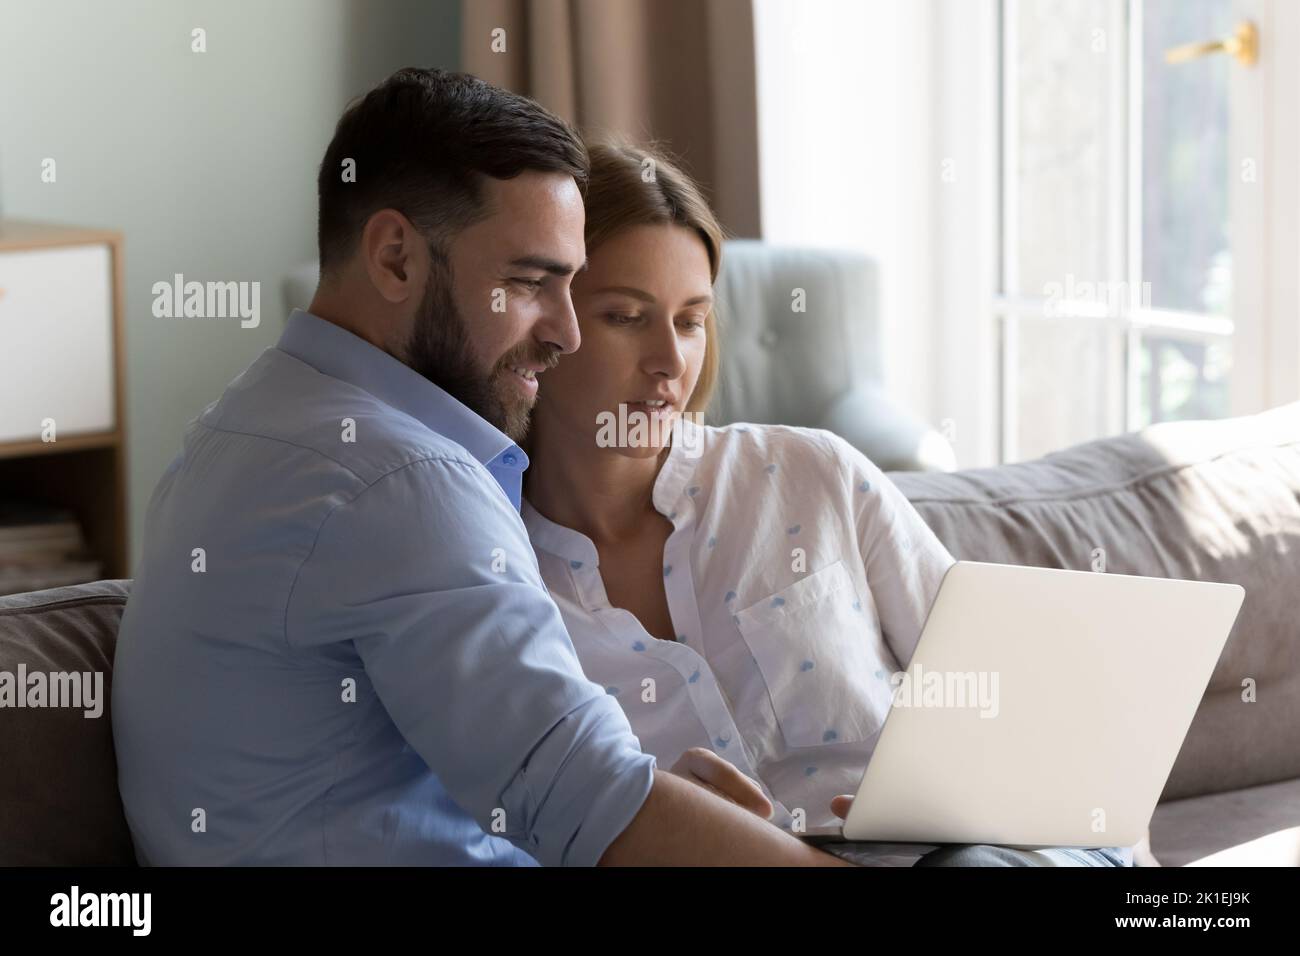 Glückliches Millennial-Paar, das sich zu Hause auf dem Sofa ausruht und einen Laptop in der Hand hält Stockfoto